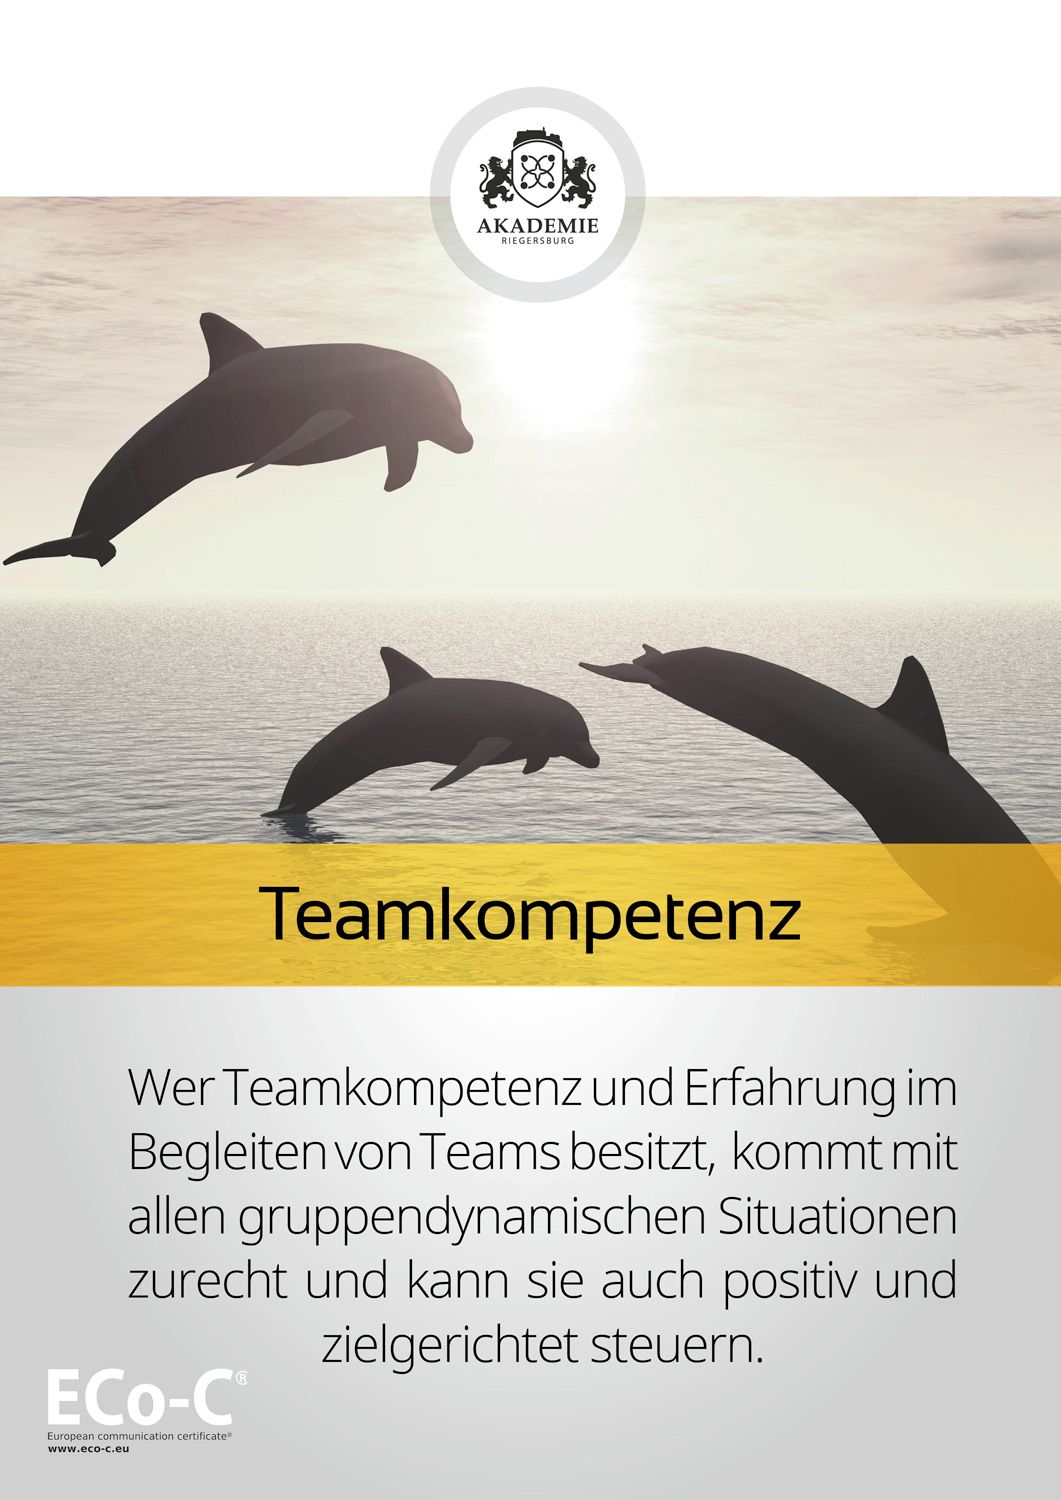 Seminar - Eco-C Modul Teamkompetenz 
- 
Naturbursch Training Riegersburg - Teamtraining, Kletterkurse, Hochseilgarten